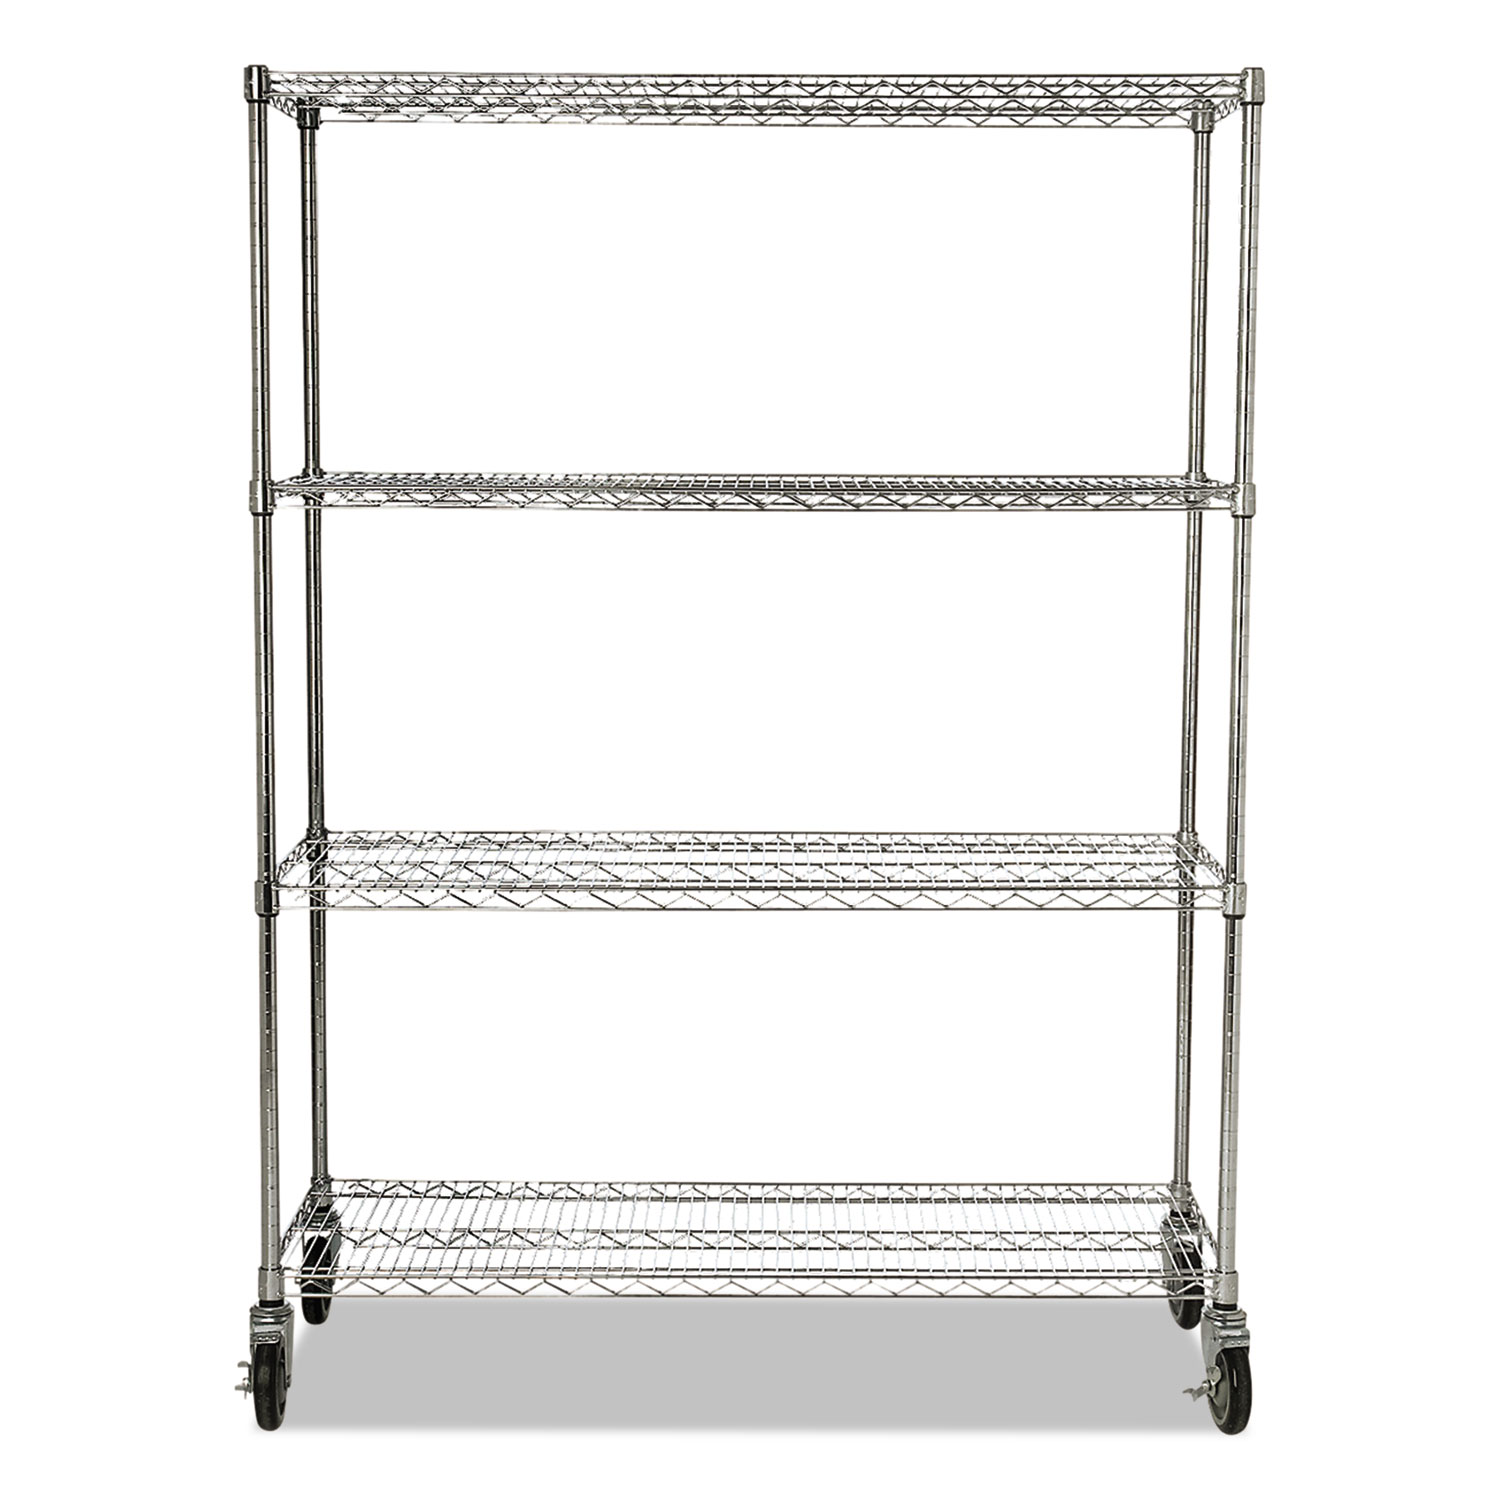 ProSave Shelf Ingredient Bin Cart, Four-Shelf, 50w x 18d x 67 1/4h, Chrome